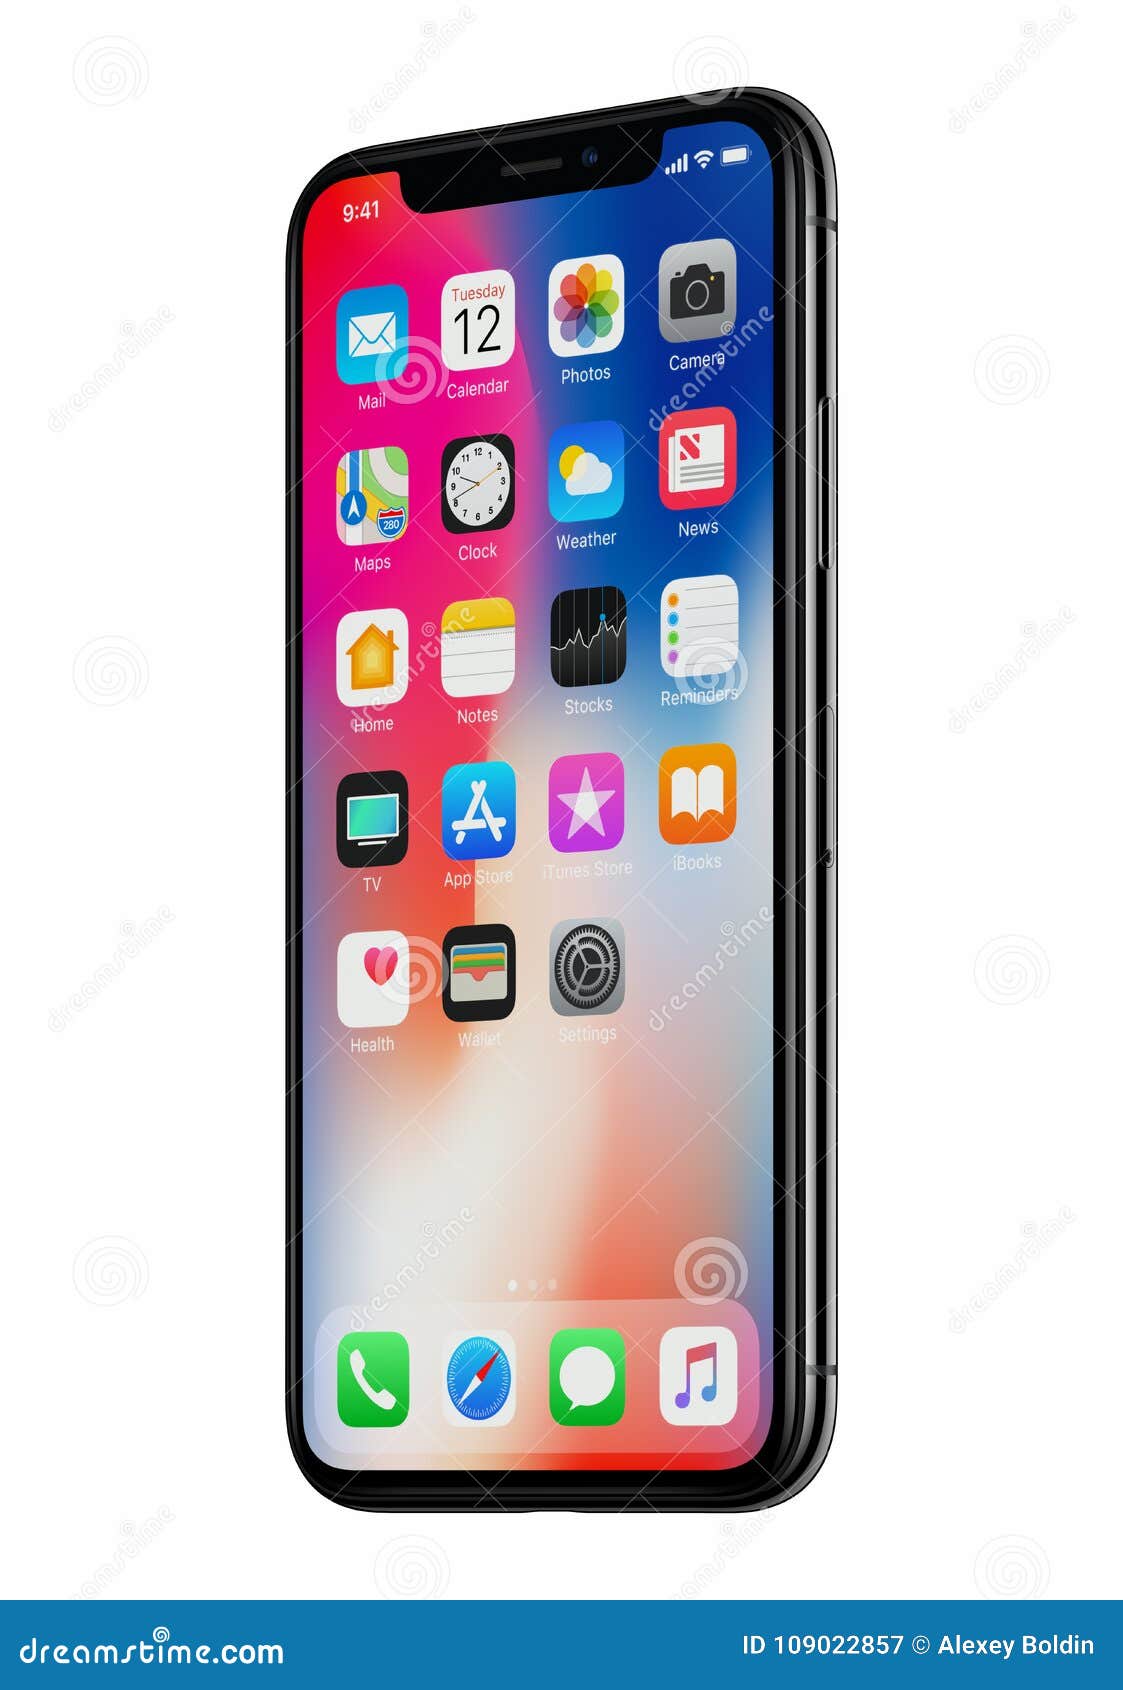 iPhone X: Với màn hình rộng đến 5.8 inch, tính năng Face ID mới nhất và trải nghiệm tuyệt vời khi sử dụng, iPhone X là một sản phẩm đáng mong đợi cho những ai yêu thích công nghệ và sự tiện ích.